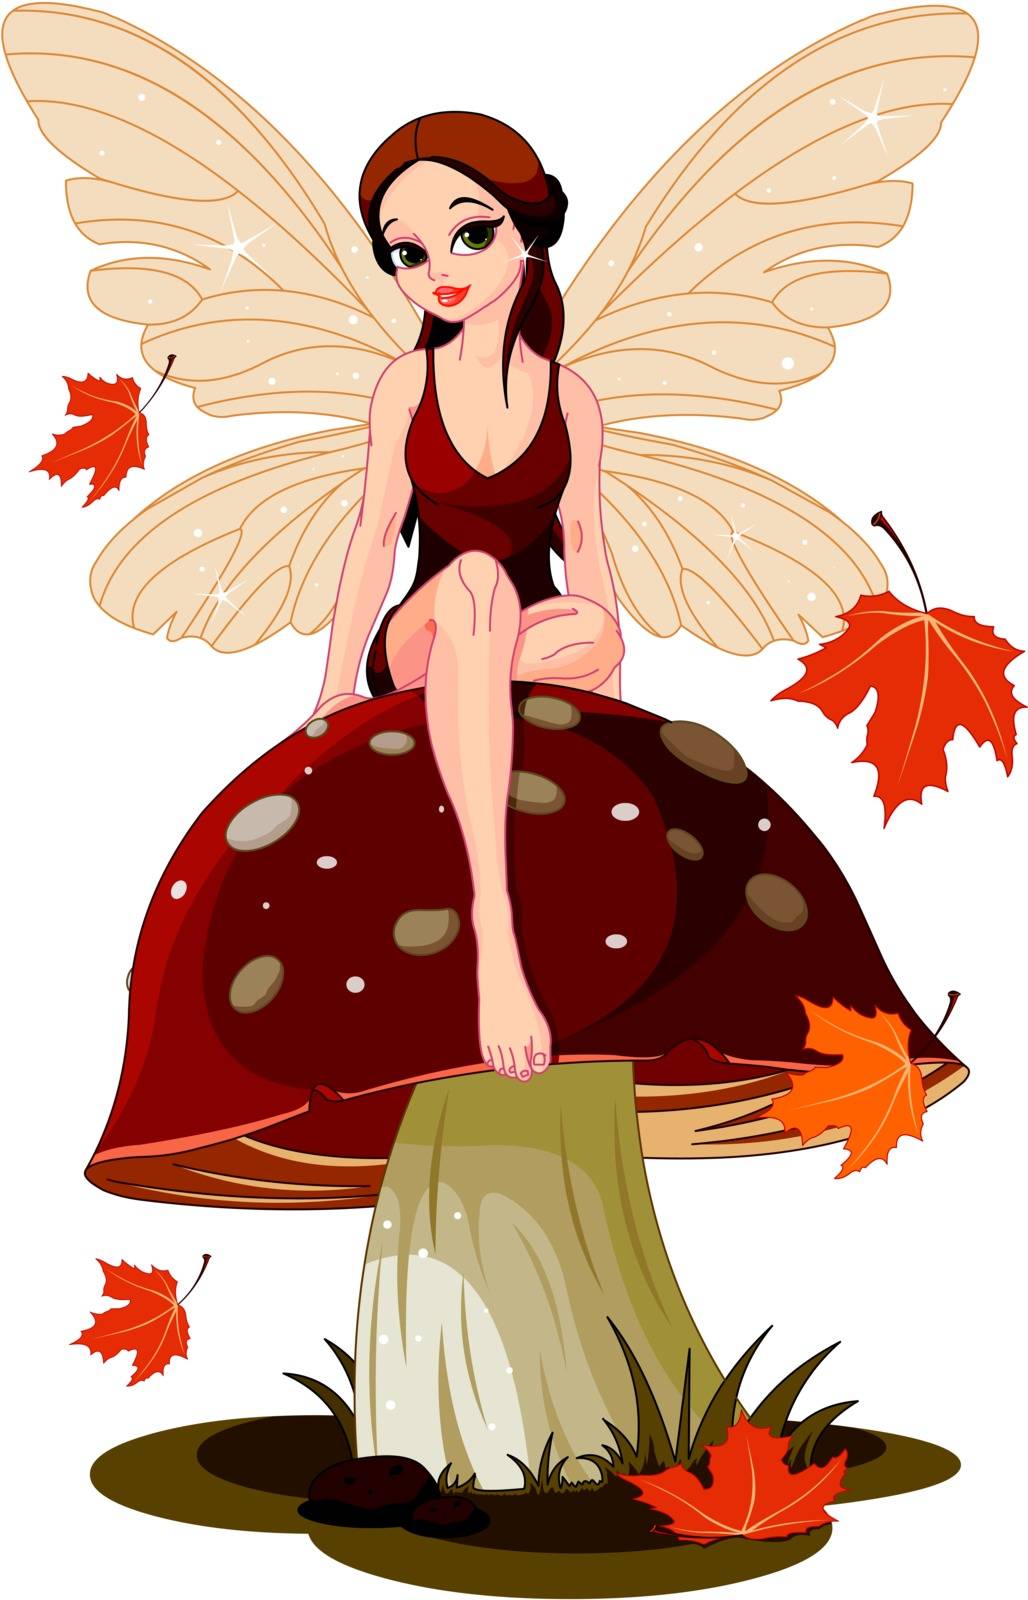 Autumn fairy sitting on mushroom